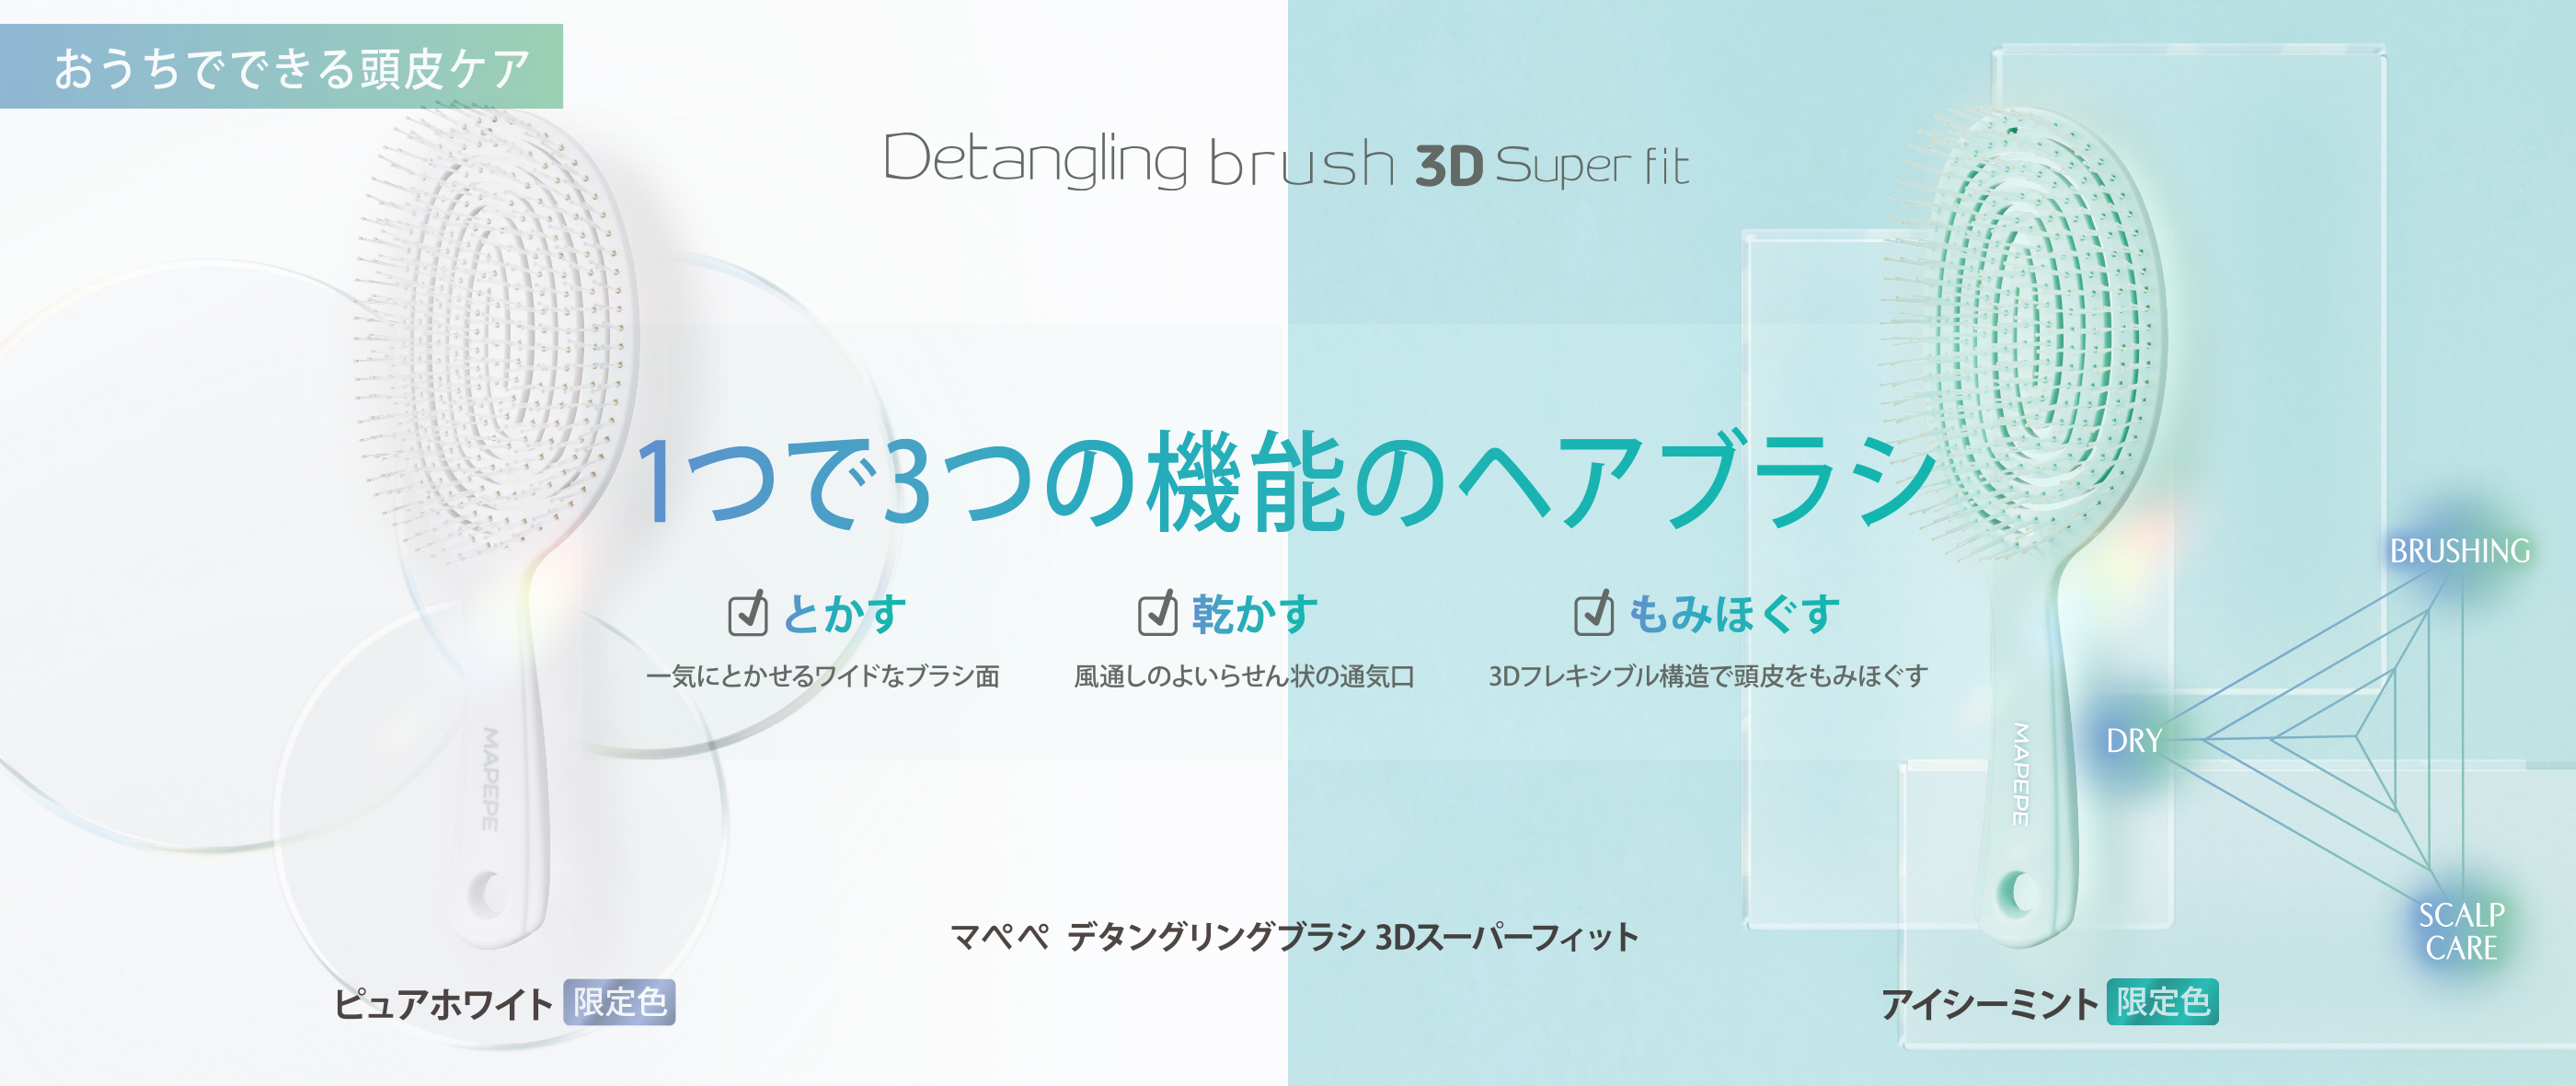 マペペ デタングリングブラシ 3Dスーパーフィット マットブラック 限定2色 ピュアホワイト・アイシーミント